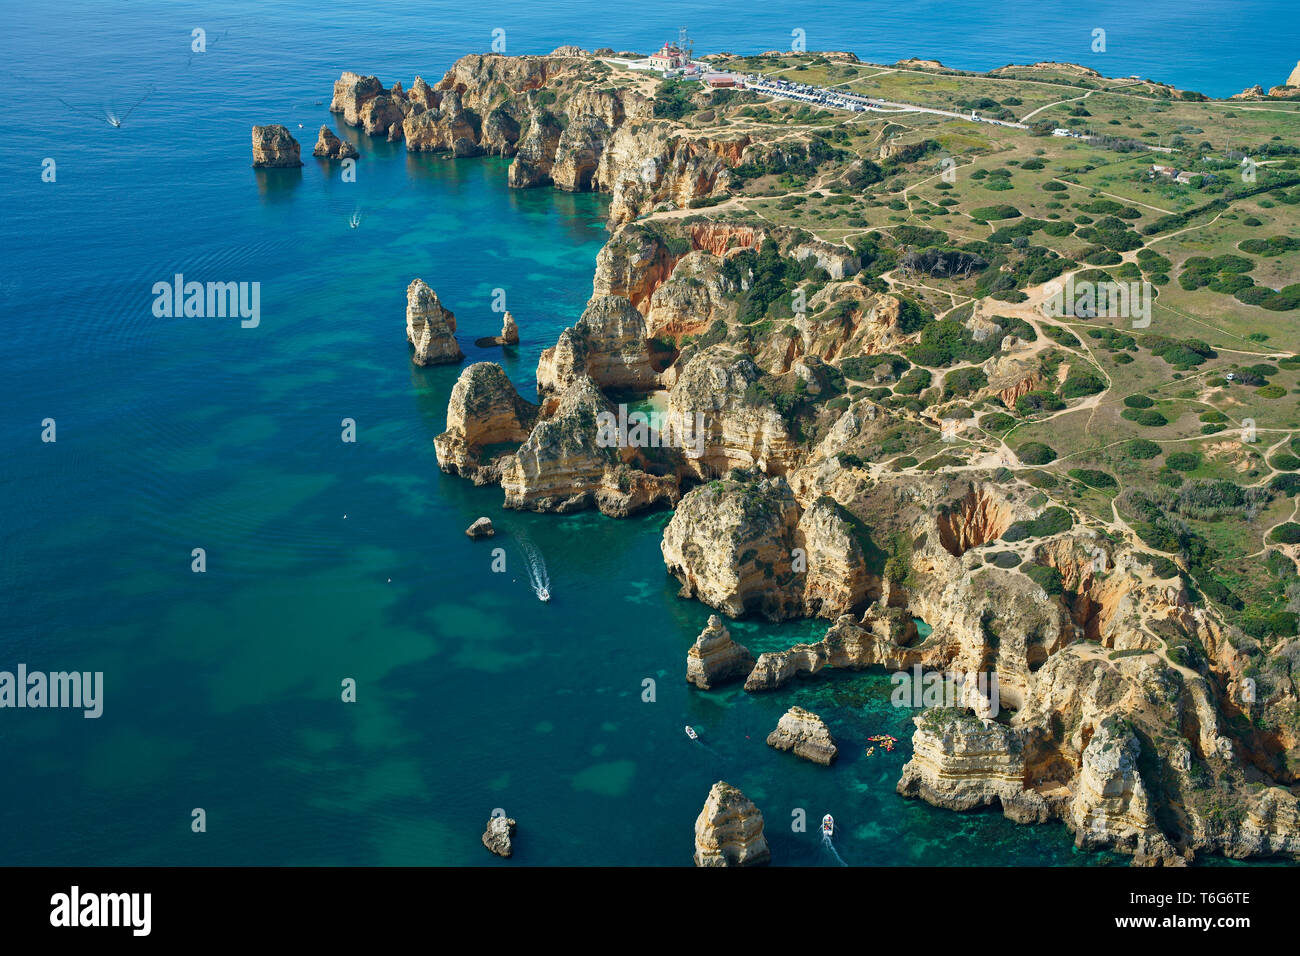 Profundamente erosionado paisaje costero con muchos sinkholes, cuevas marinas y calas (vista aérea) Ponta da Piedade, Lagos, Algarve, Portugal. Foto de stock